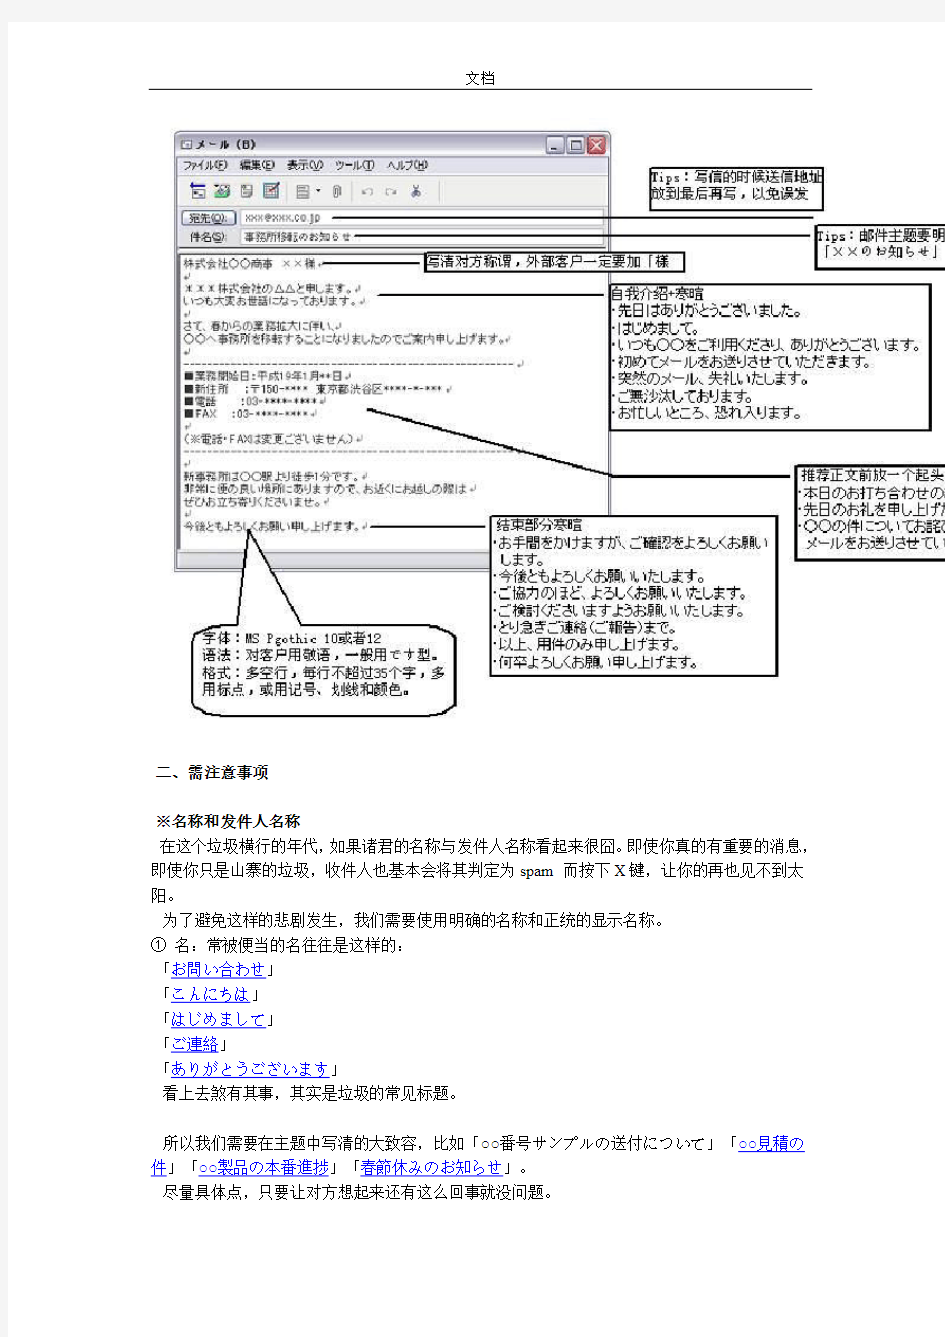 实用地日语商务邮件要求规范和技巧